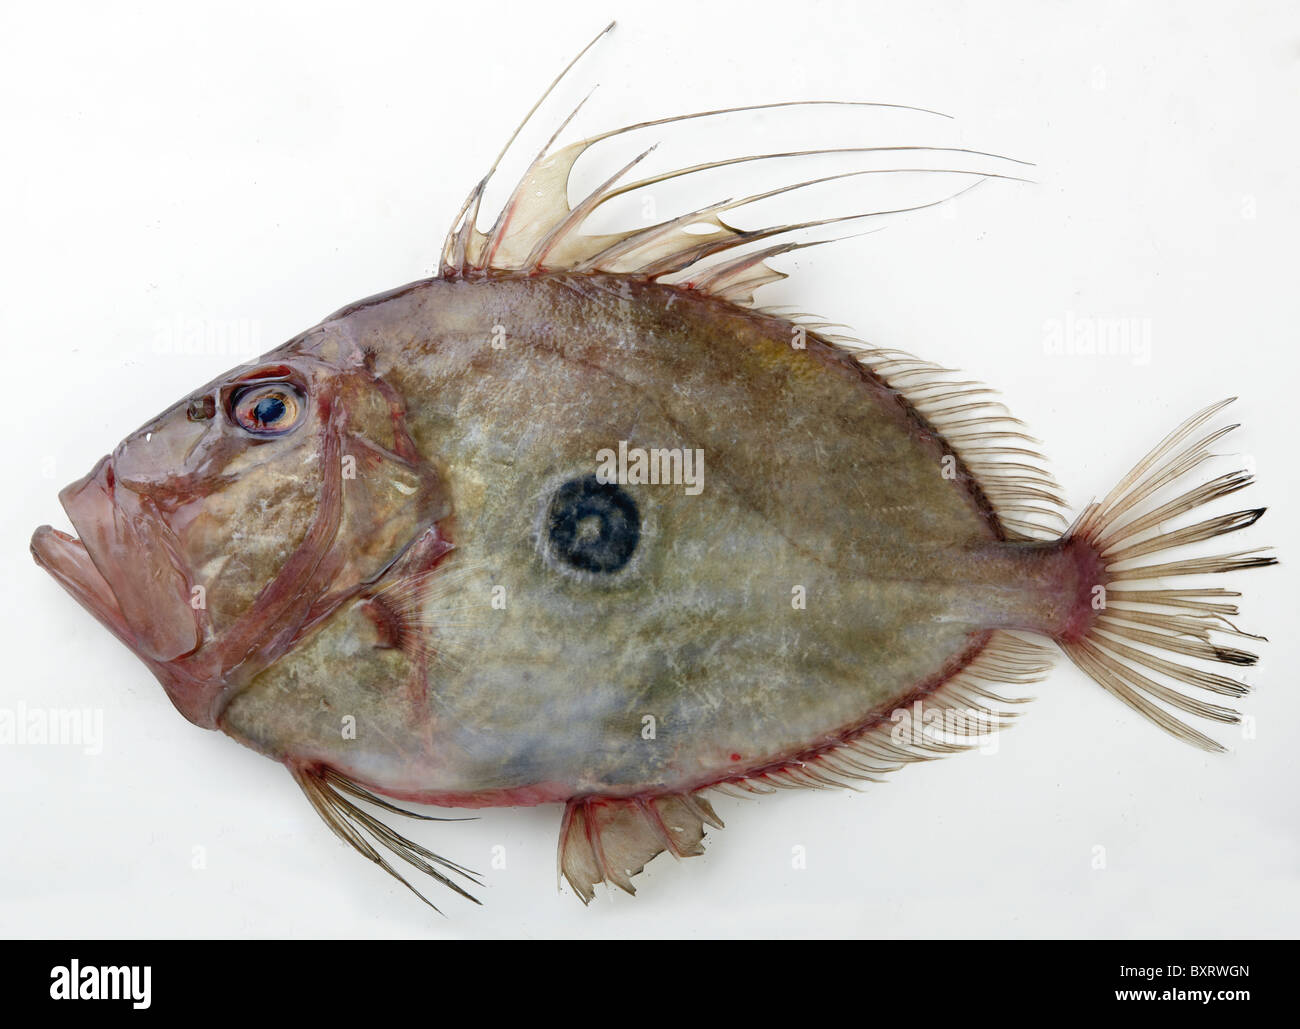 John Dory fish on white background, close-up Stock Photo